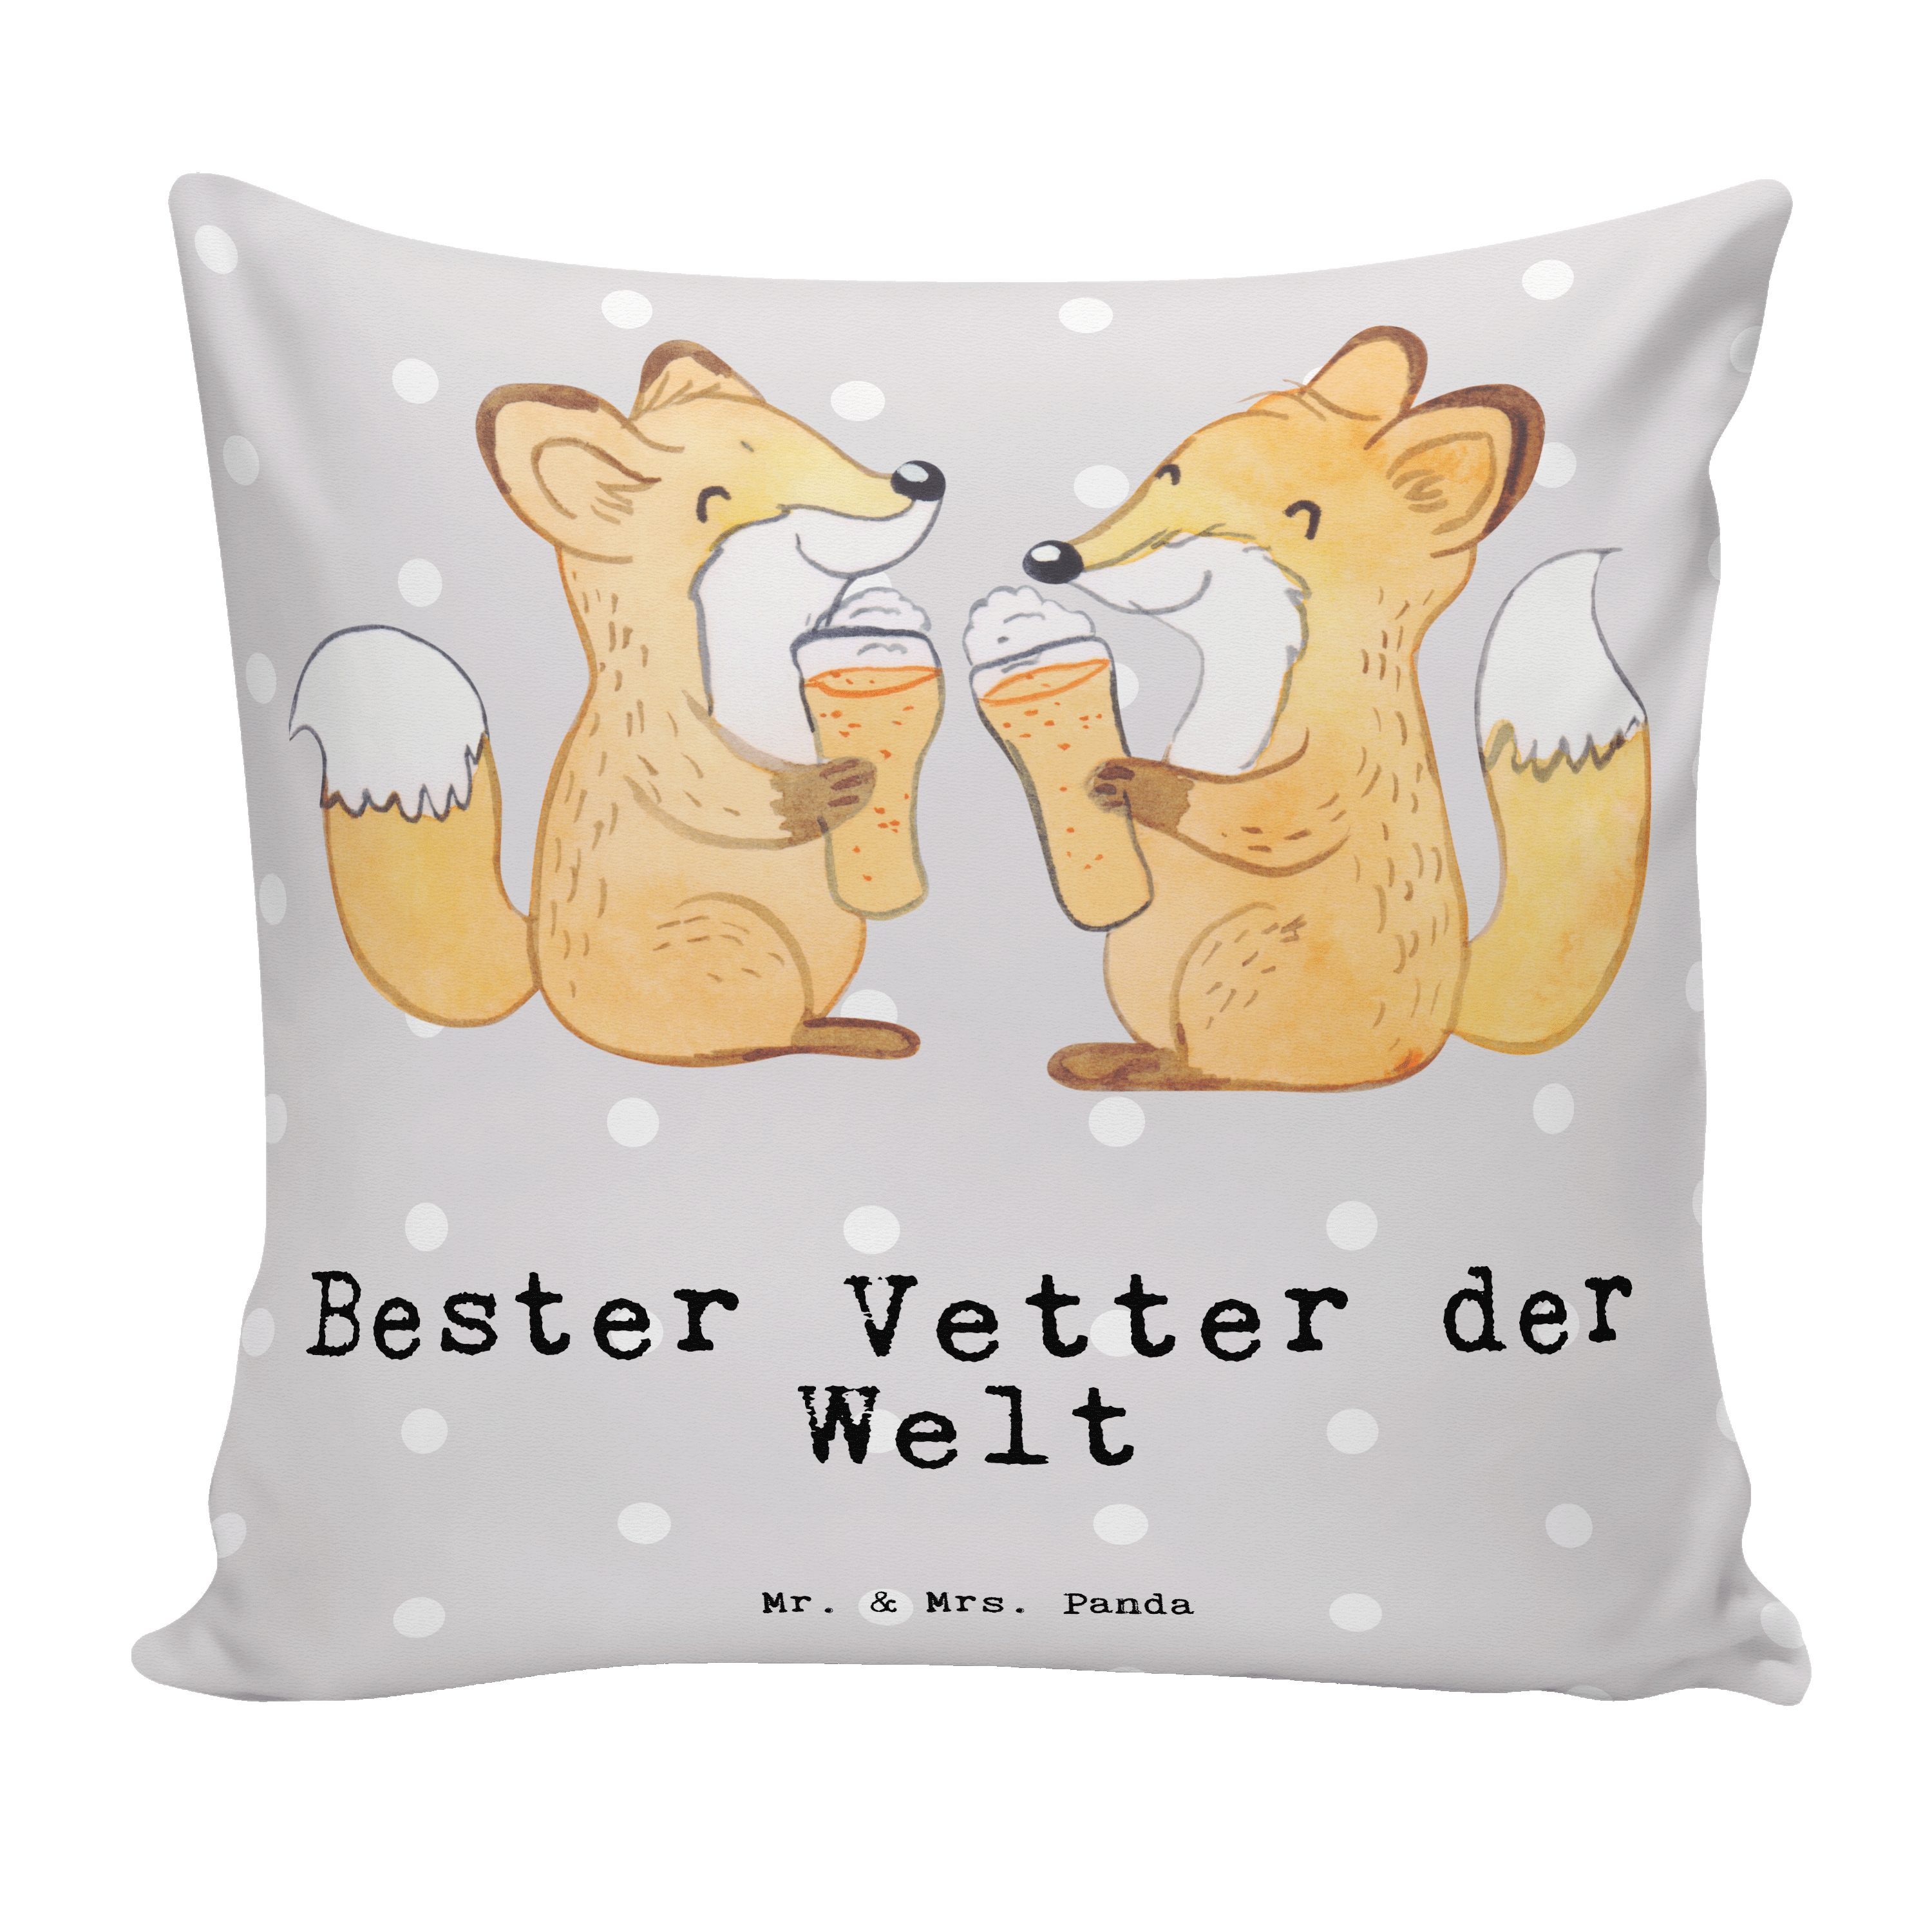 Mr. & Mrs. Panda Dekokissen Fuchs Bester Vetter der Welt - Grau Pastell - Geschenk, Kopfkissen, S